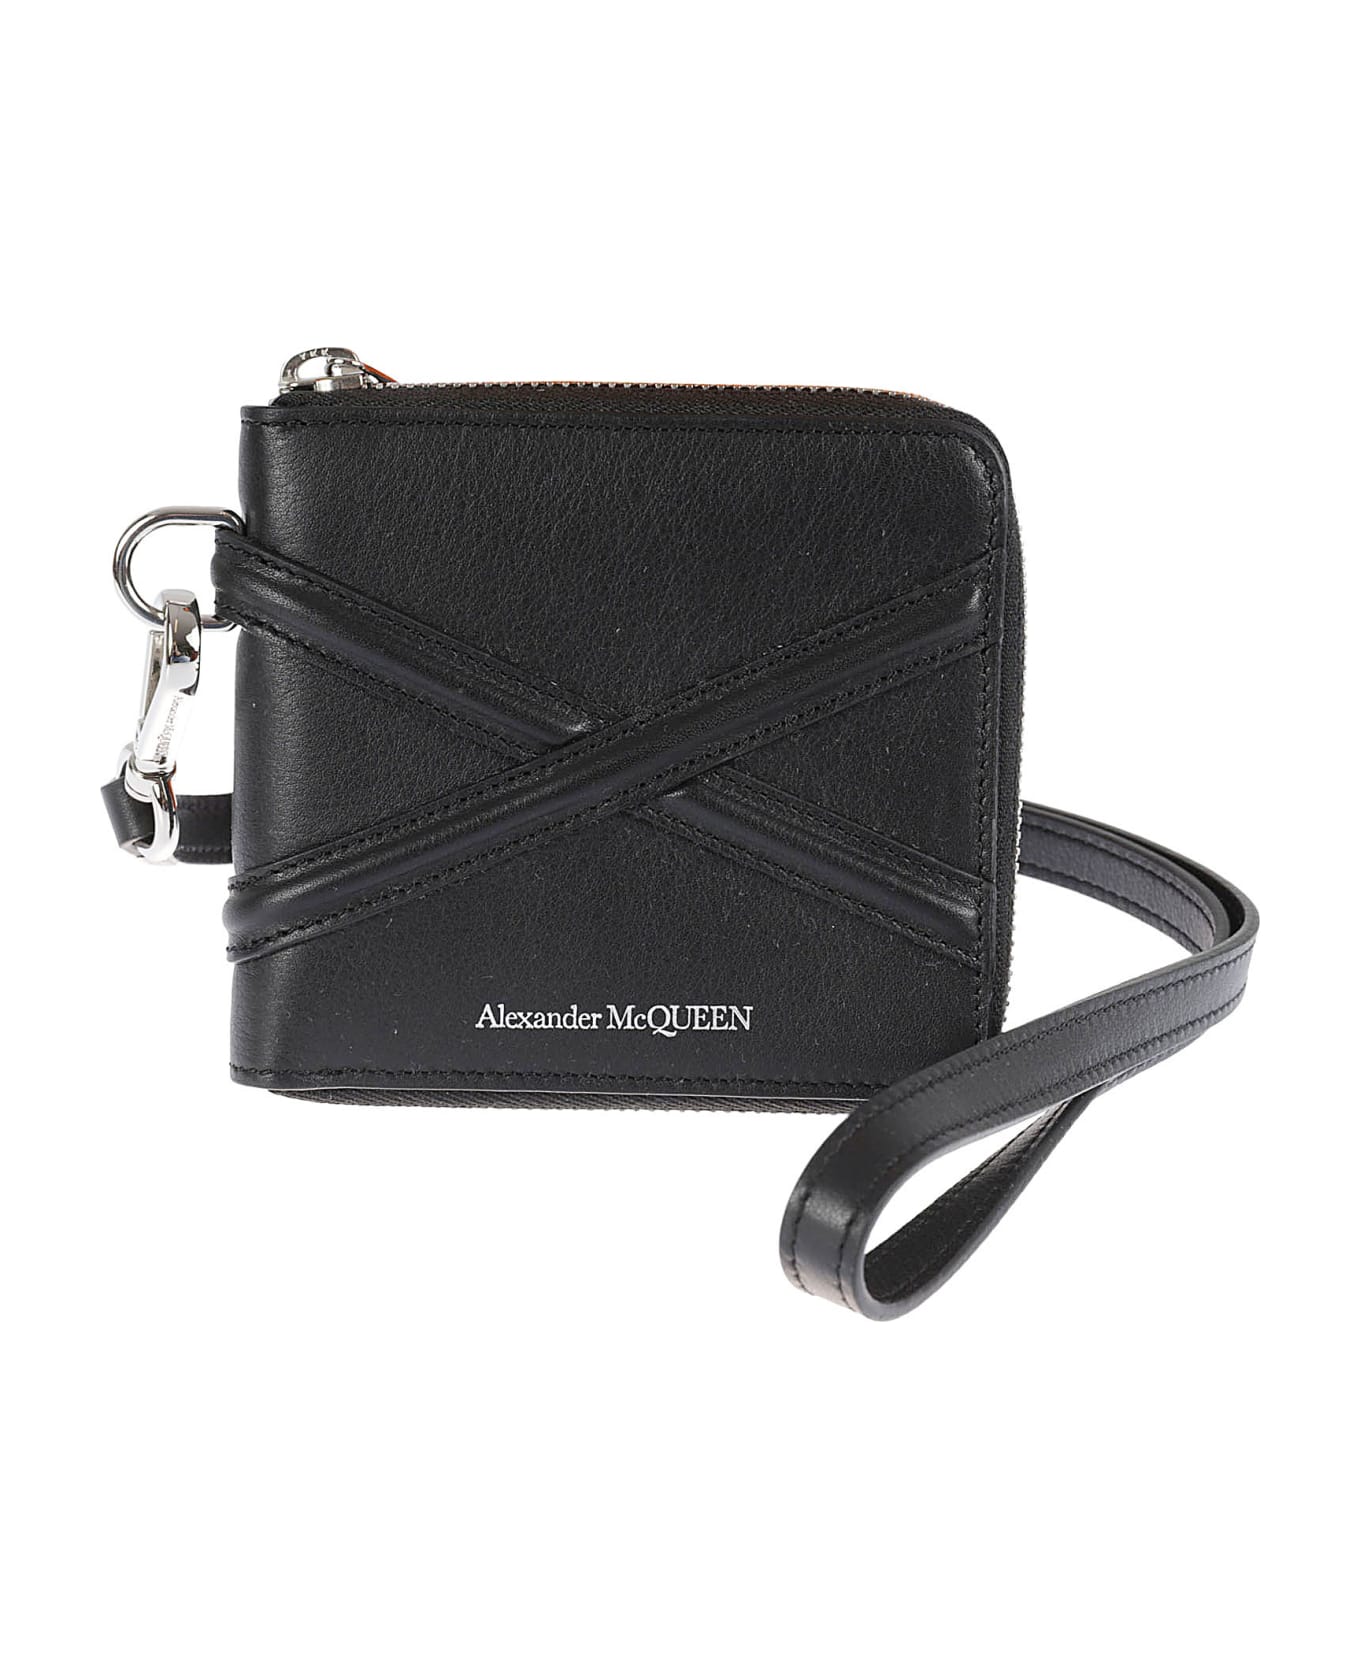 Alexander McQueen Zip-around Billfold Coin Case - Black